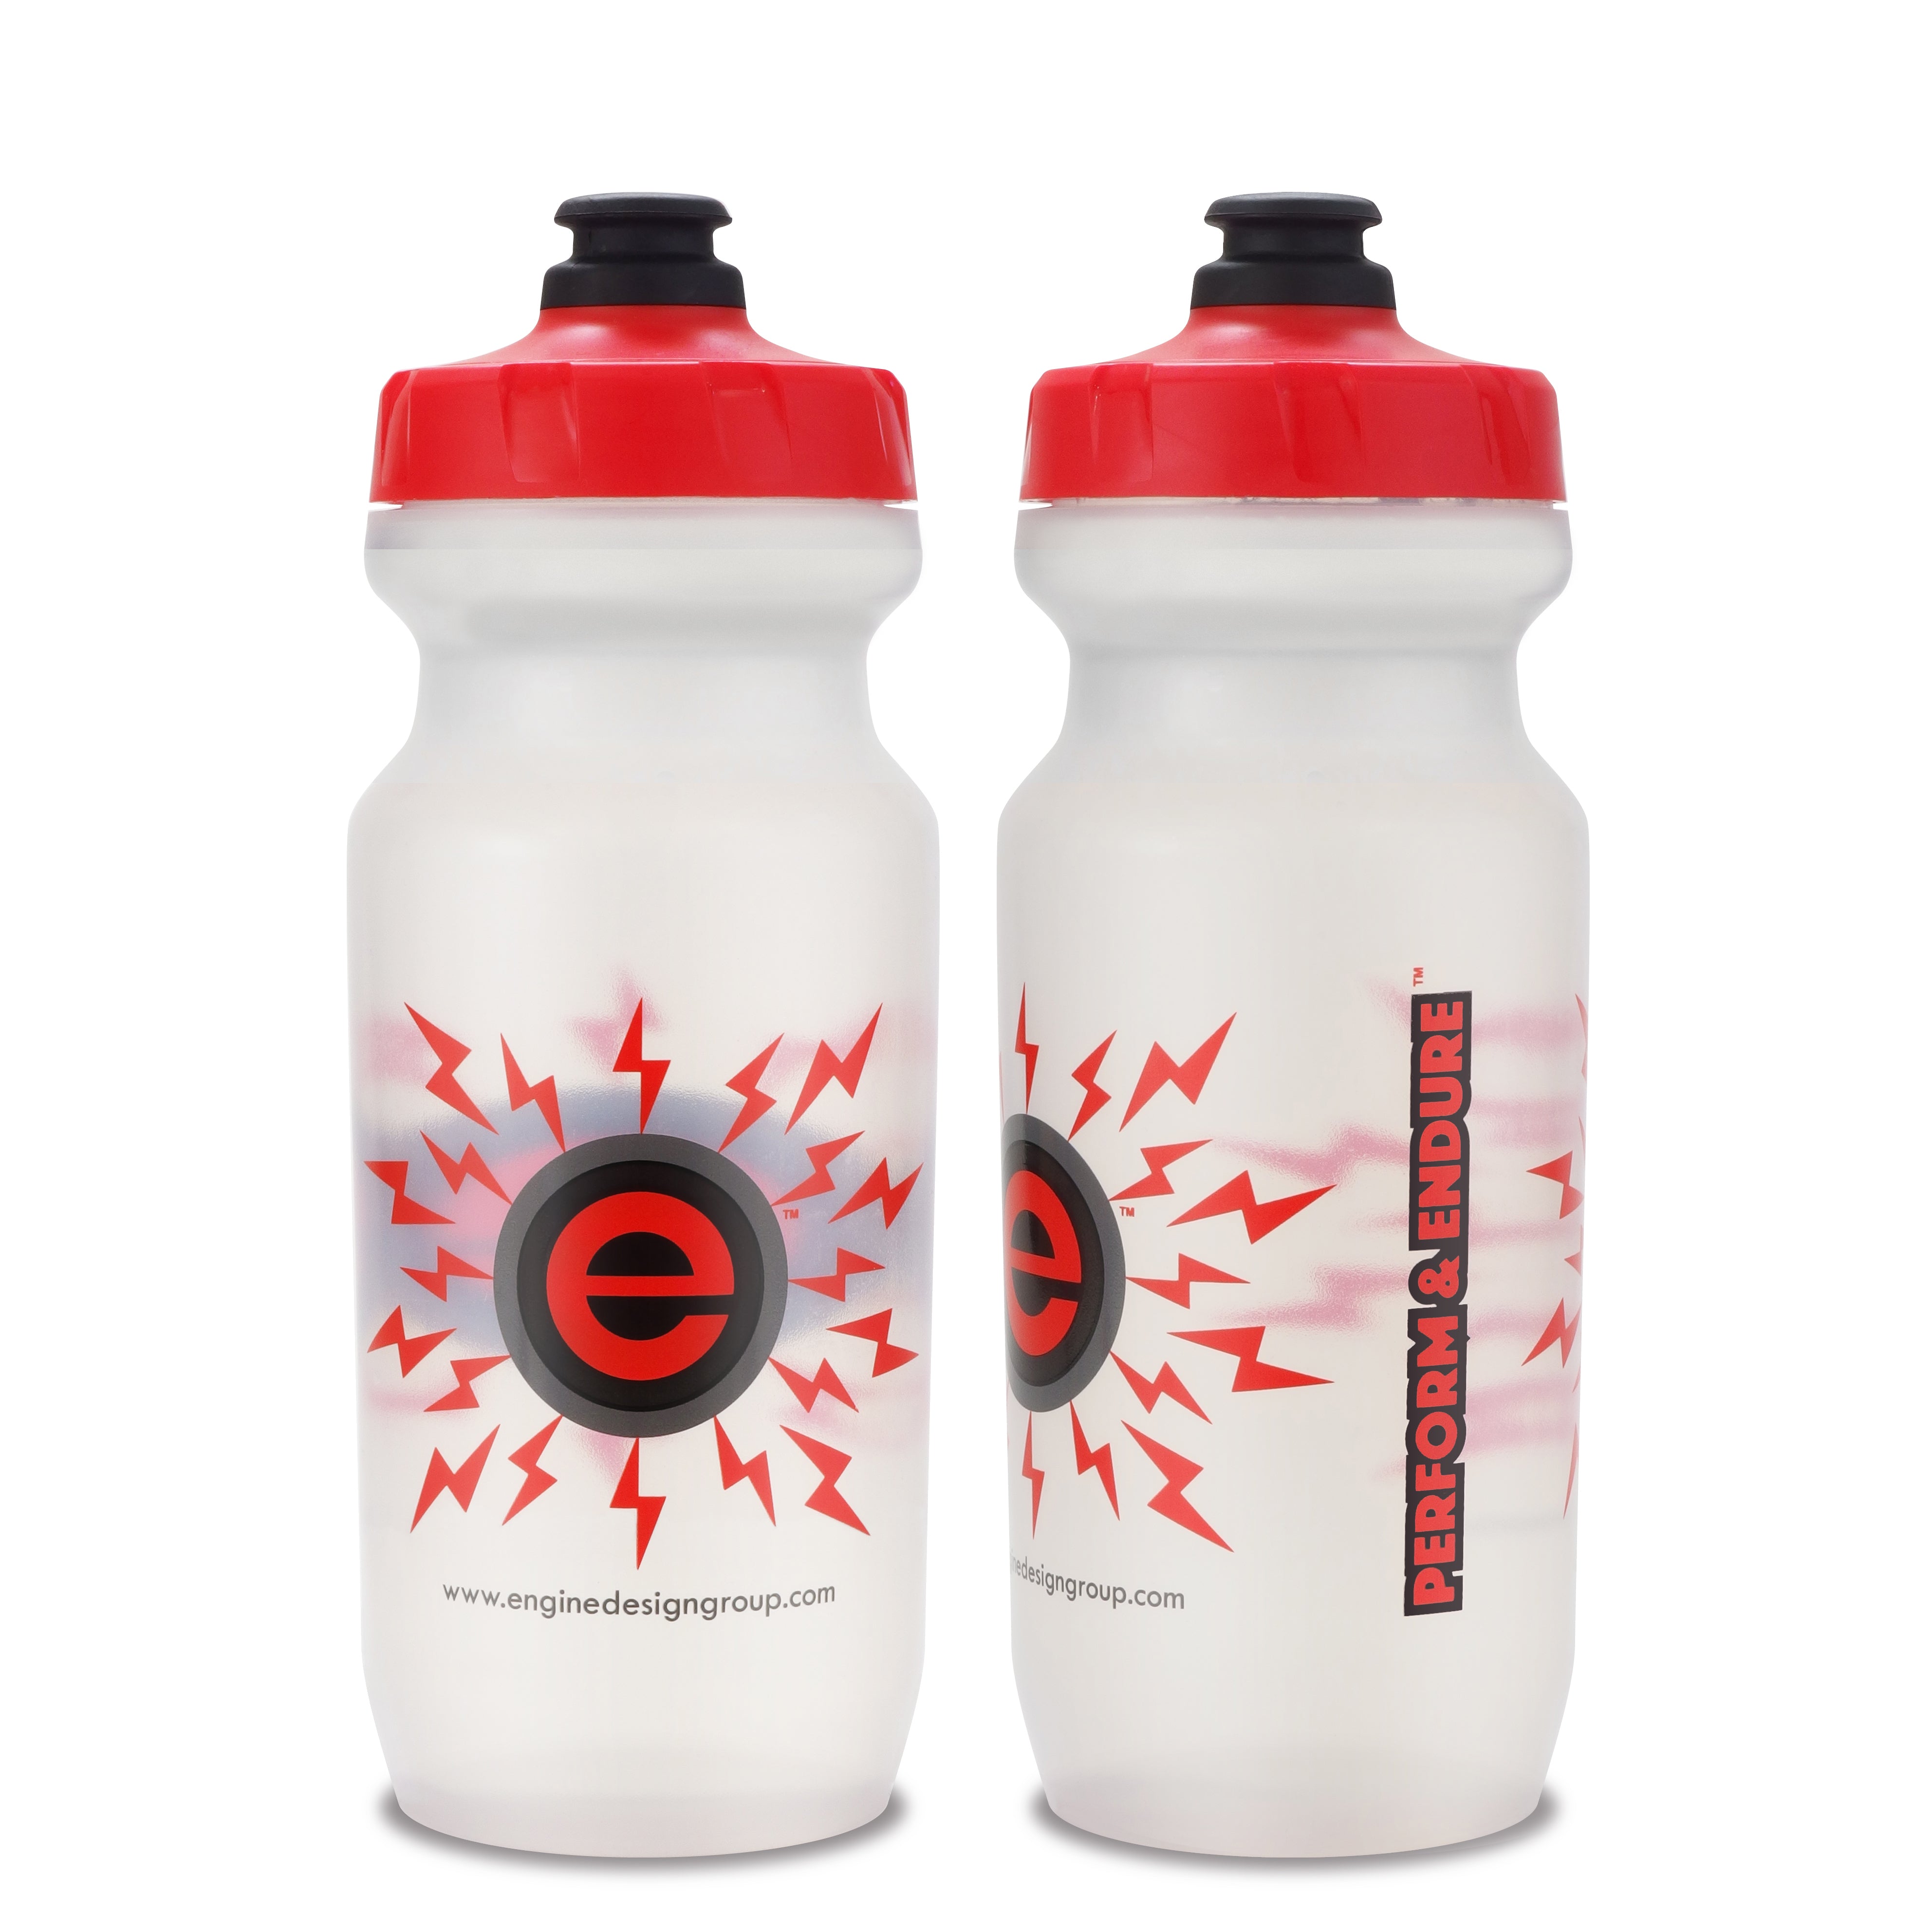 https://www.enginedesigngroup.com/cdn/shop/products/21oz-Engine-Design-Group-NGN-Sport-Bike-Water-Bottle-CLR-RED.jpg?v=1567927142